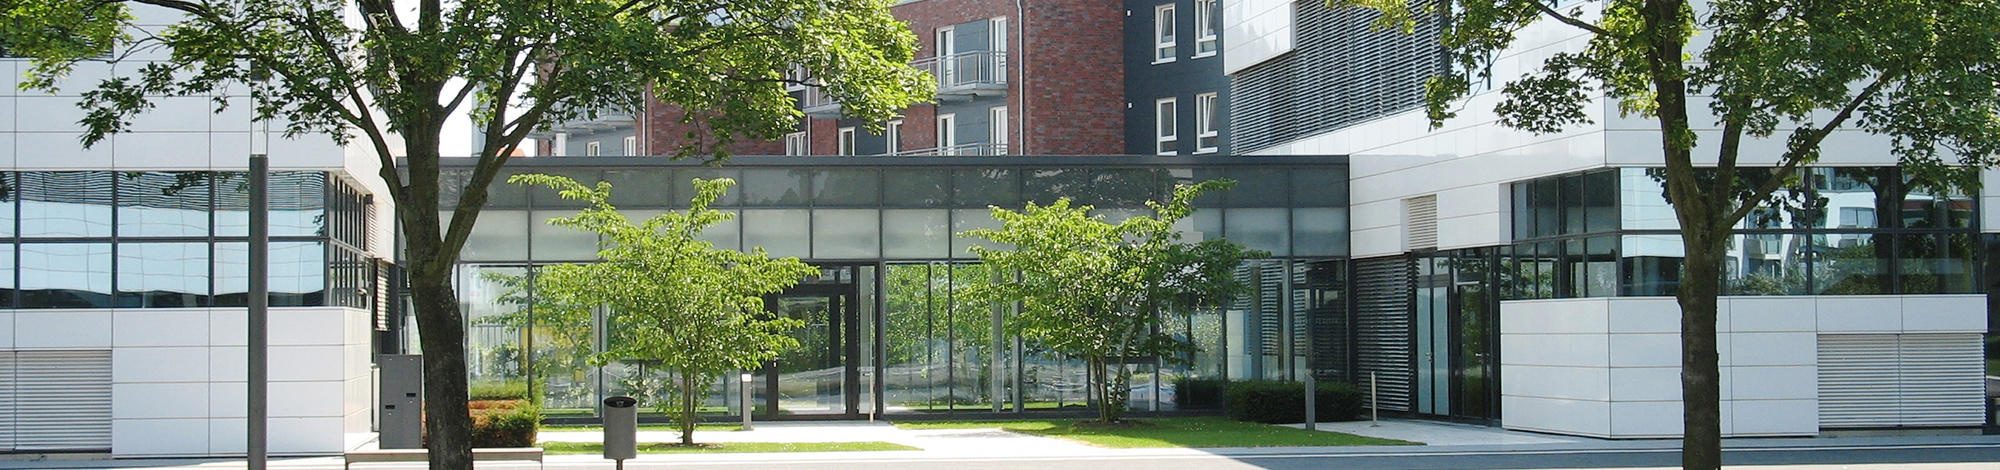 Университет прикладных наук Рейн-Вааль, Клеве, Германия